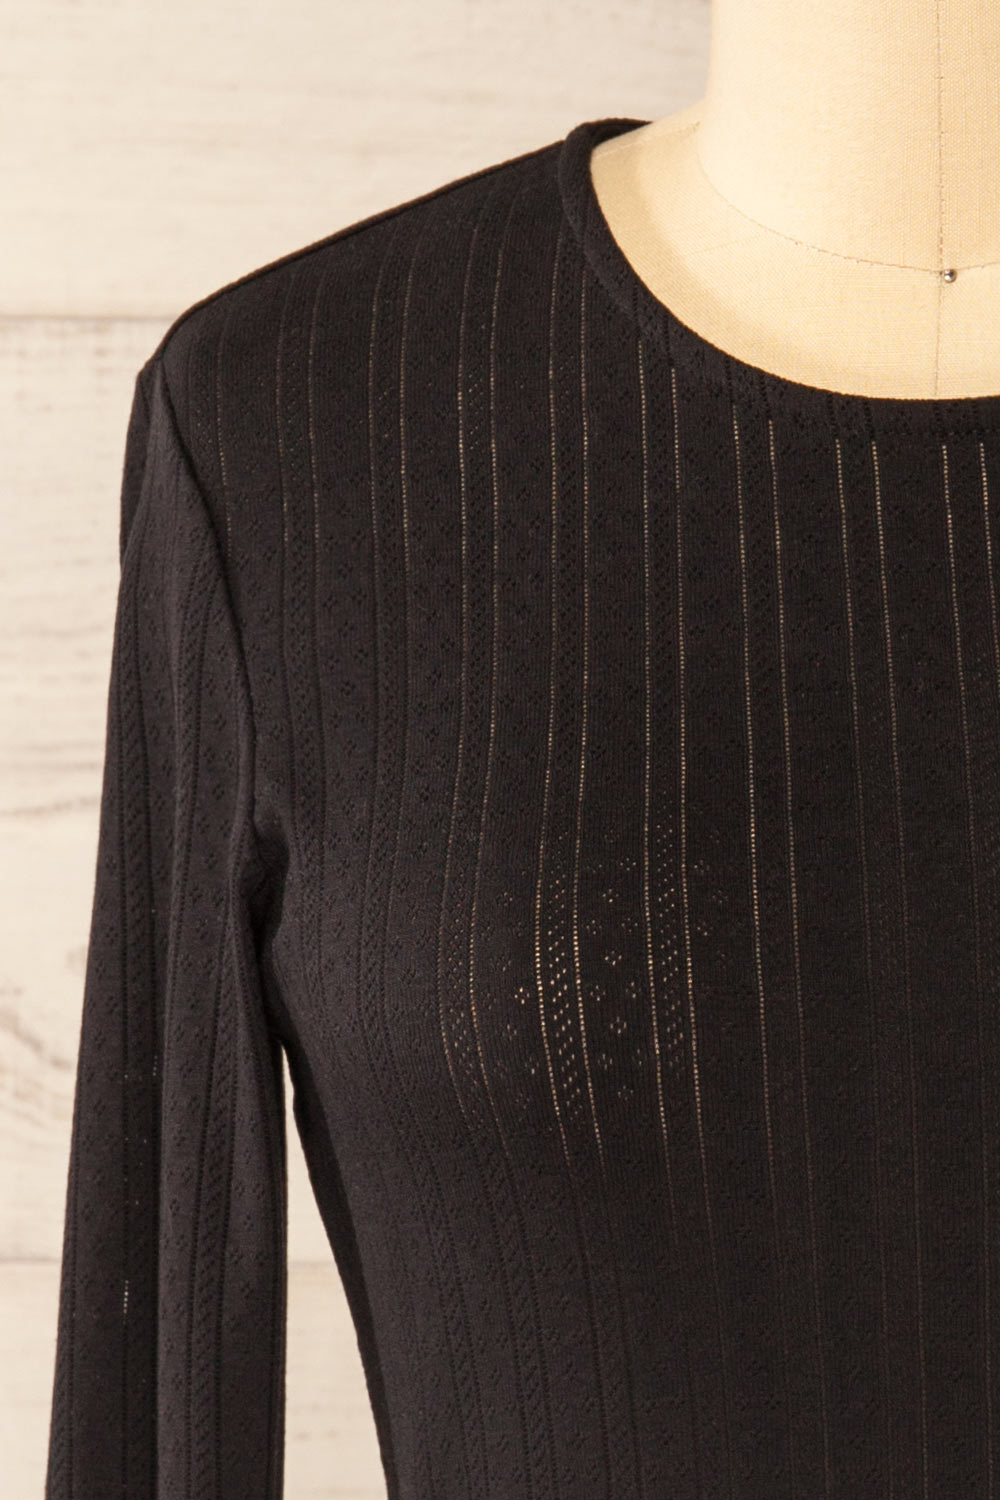 Toulon Black Long Sleeve Lace-Knit Top | La petite garçonne front close-up